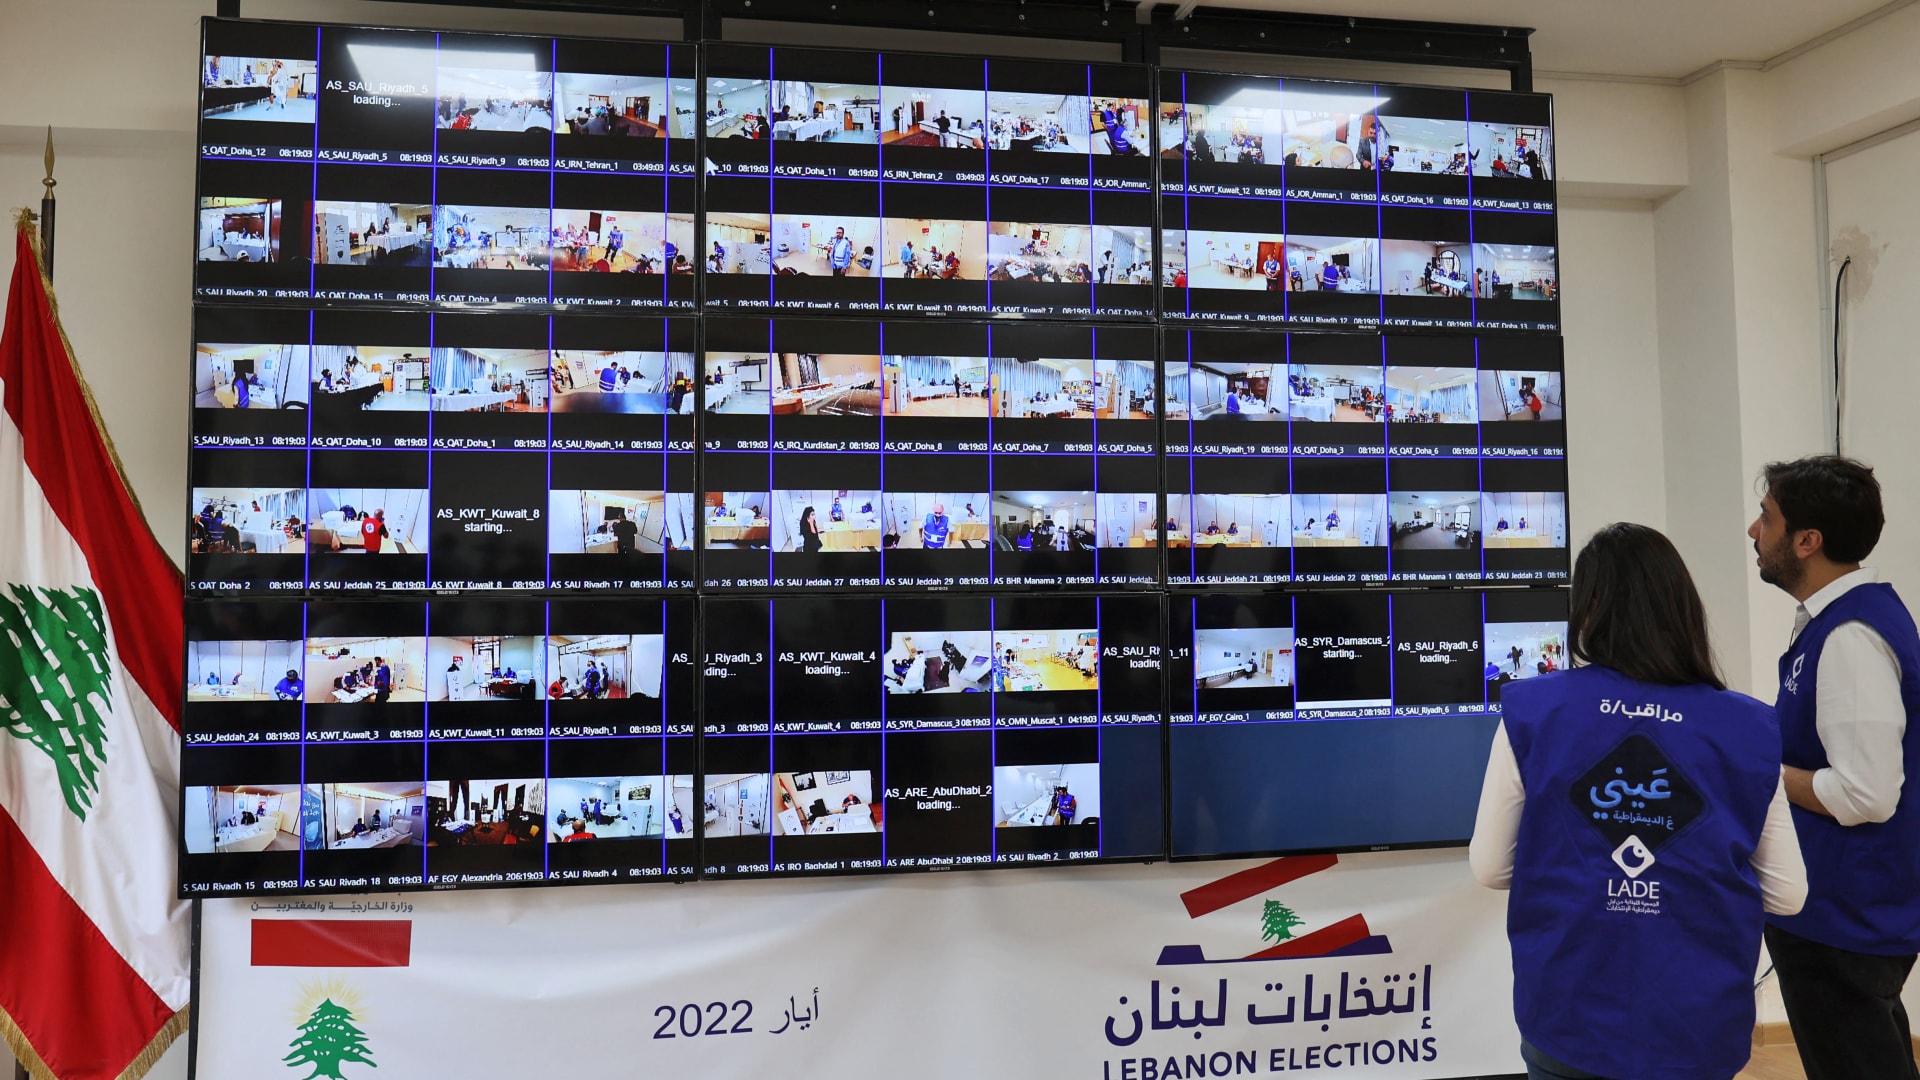 مراقبان للانتخابات اللبنانية 